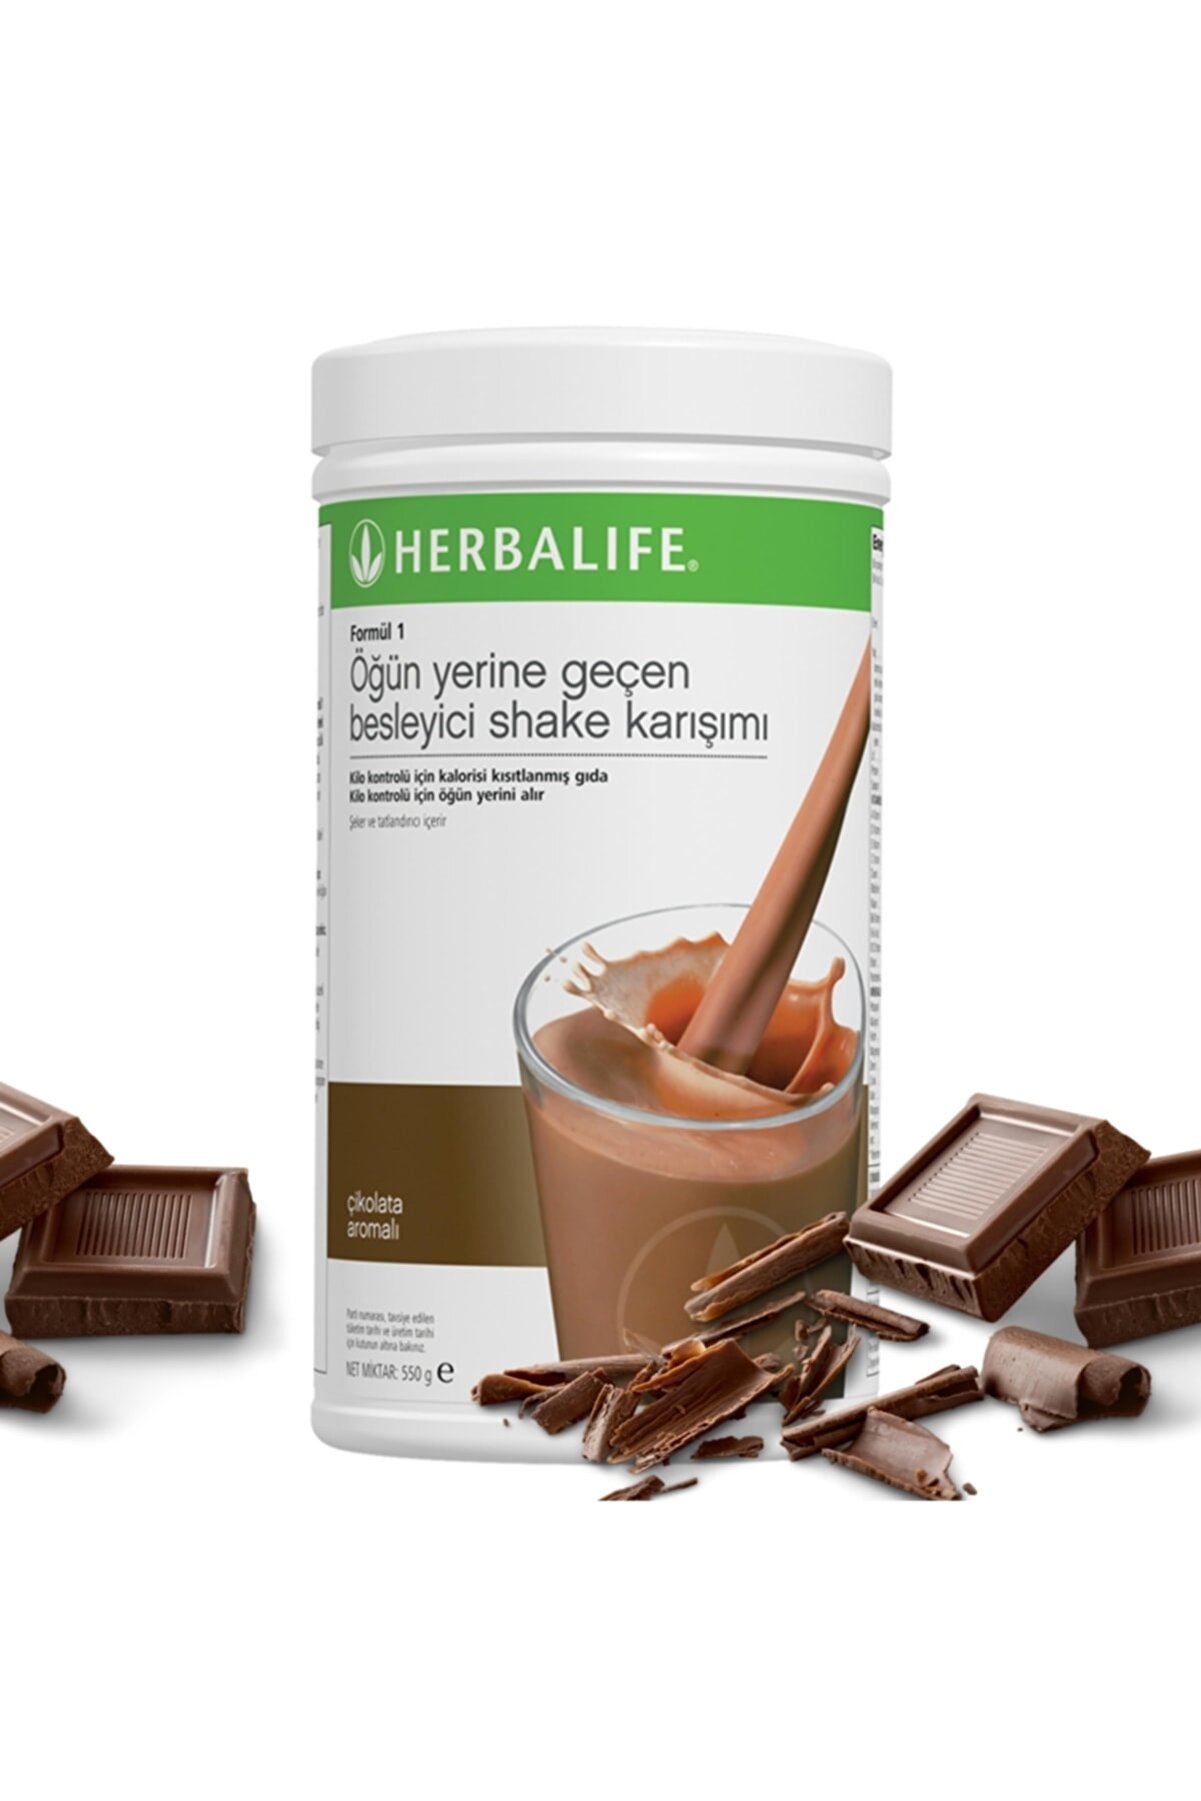 Herbalife Formül 1 Besleyici Shake Karışımı Çikolata Aromalı